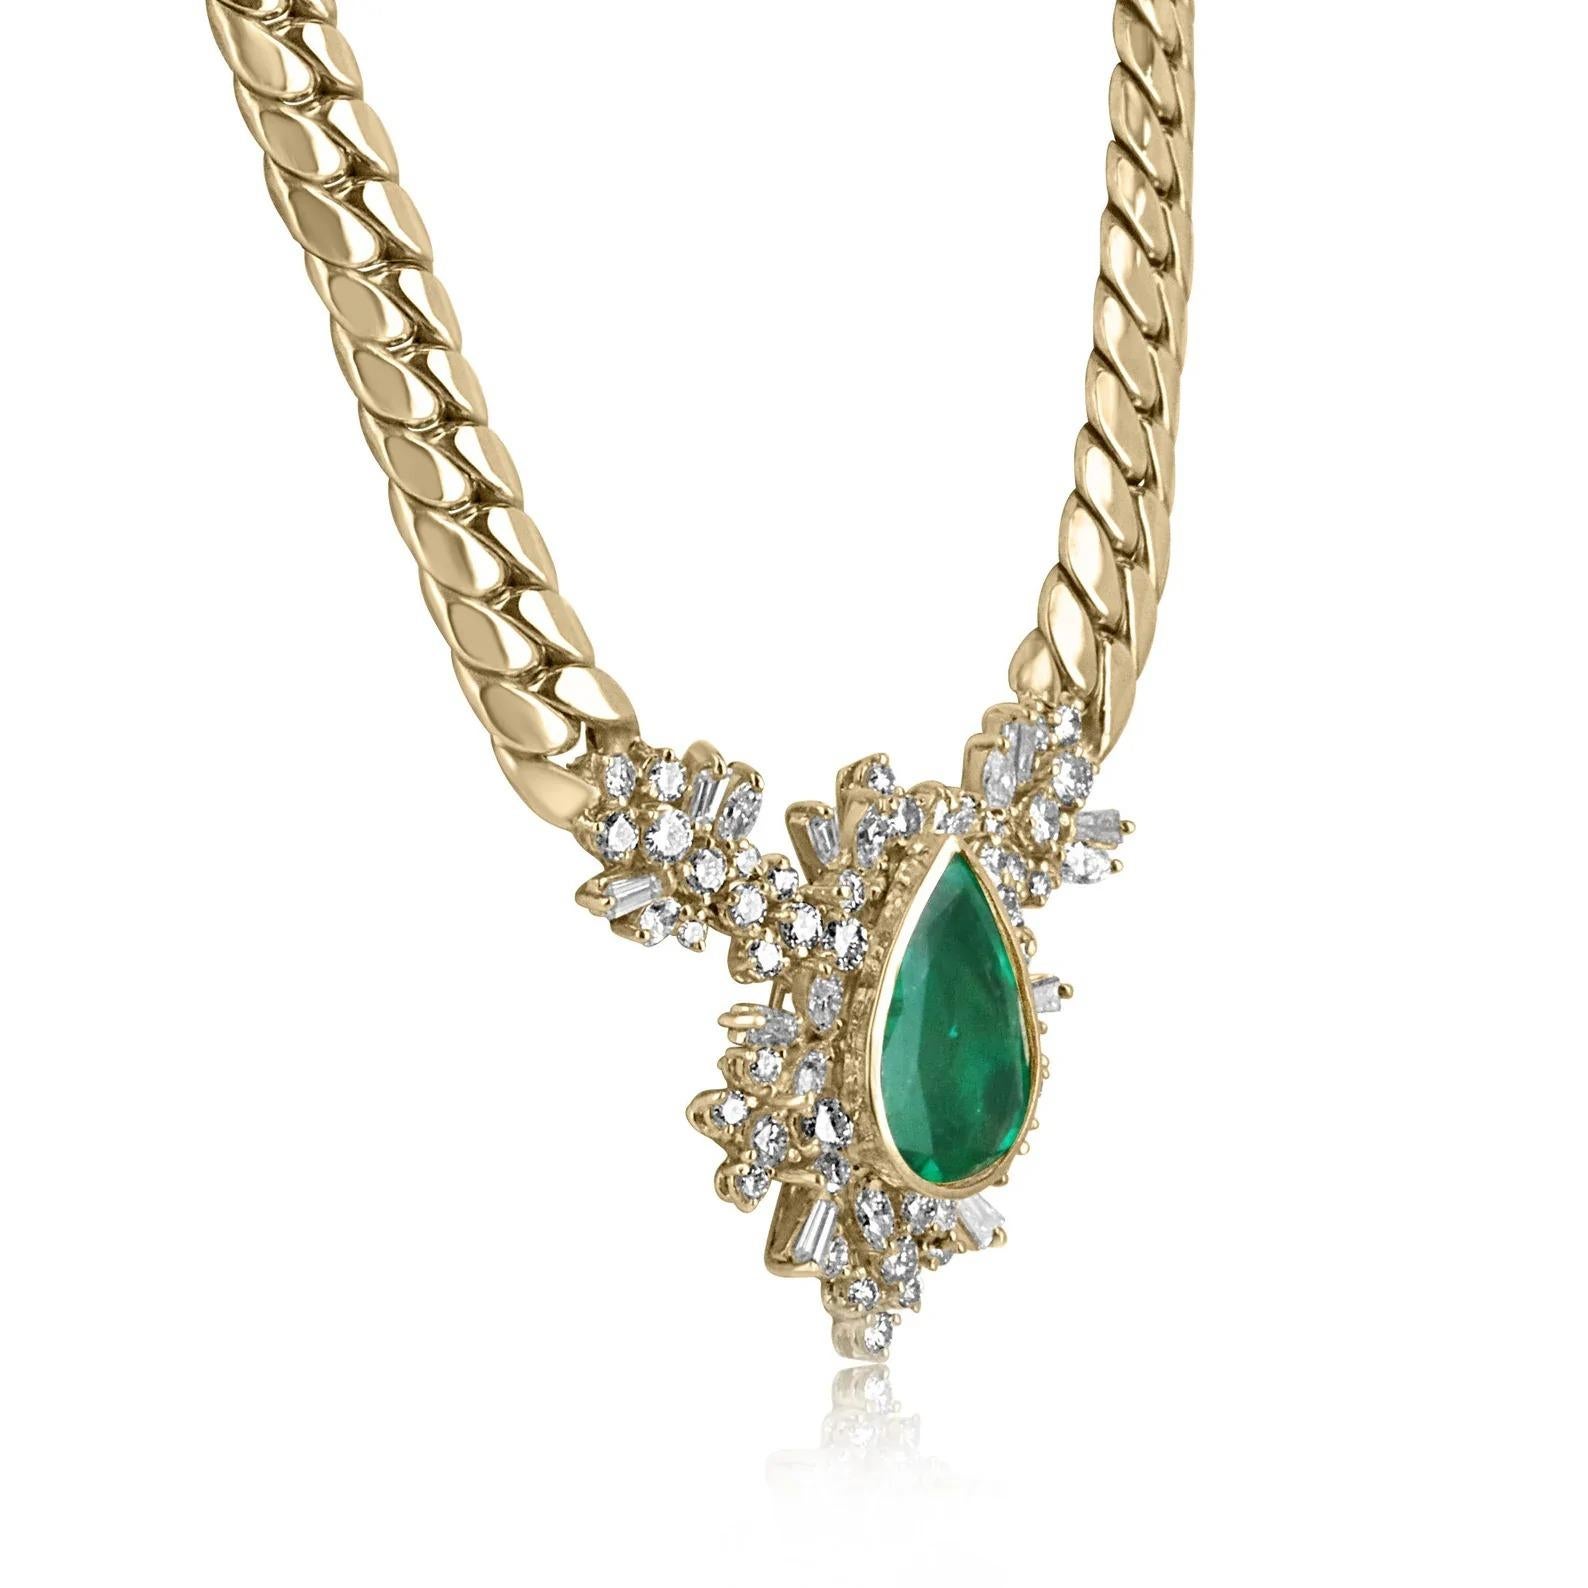 Le collier présenté est une extraordinaire et grande émeraude colombienne verte Muzo et un collier de diamants. Une émeraude substantielle, extraite de la terre, pèse 9,90 carats et est sertie dans un élégant boîtier en or 18 carats. Une couronne de